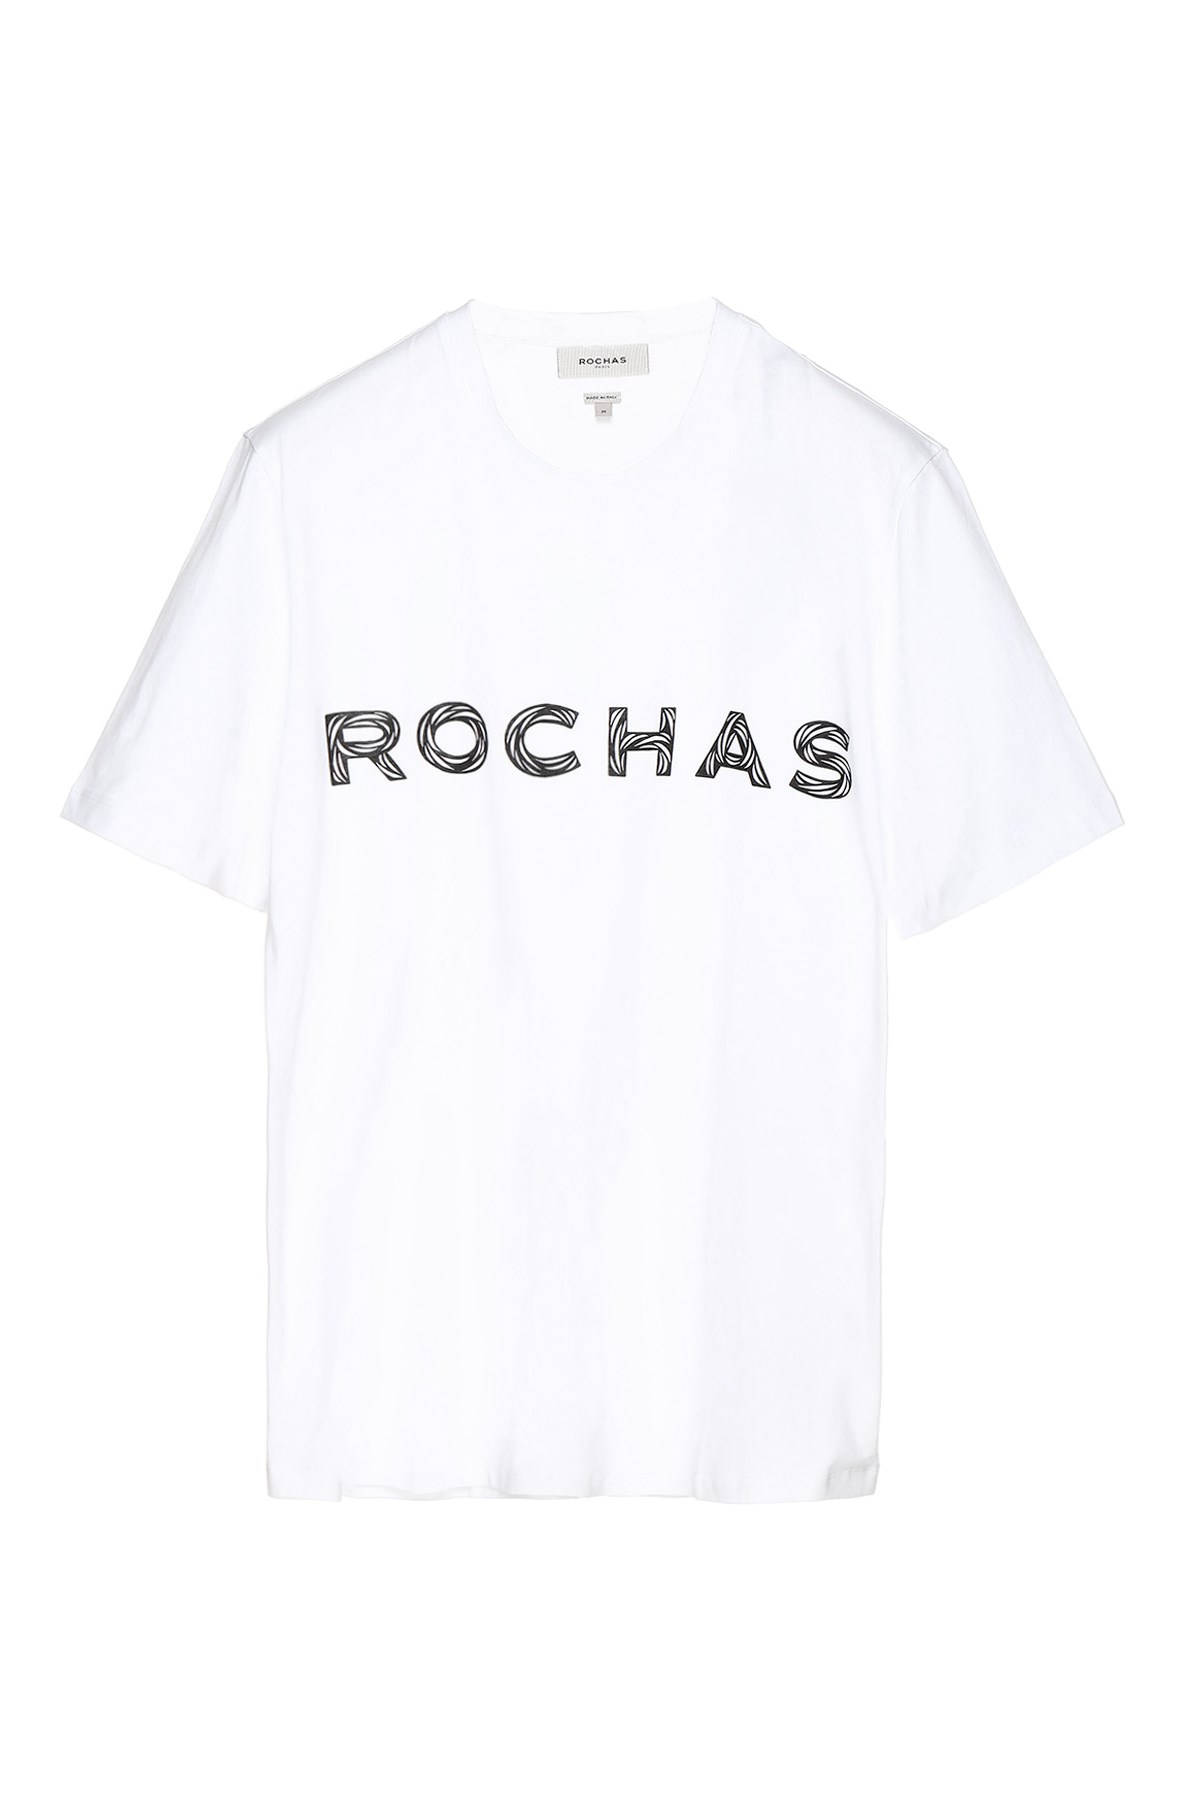 ROCHAS Printed Logo T-Shirt